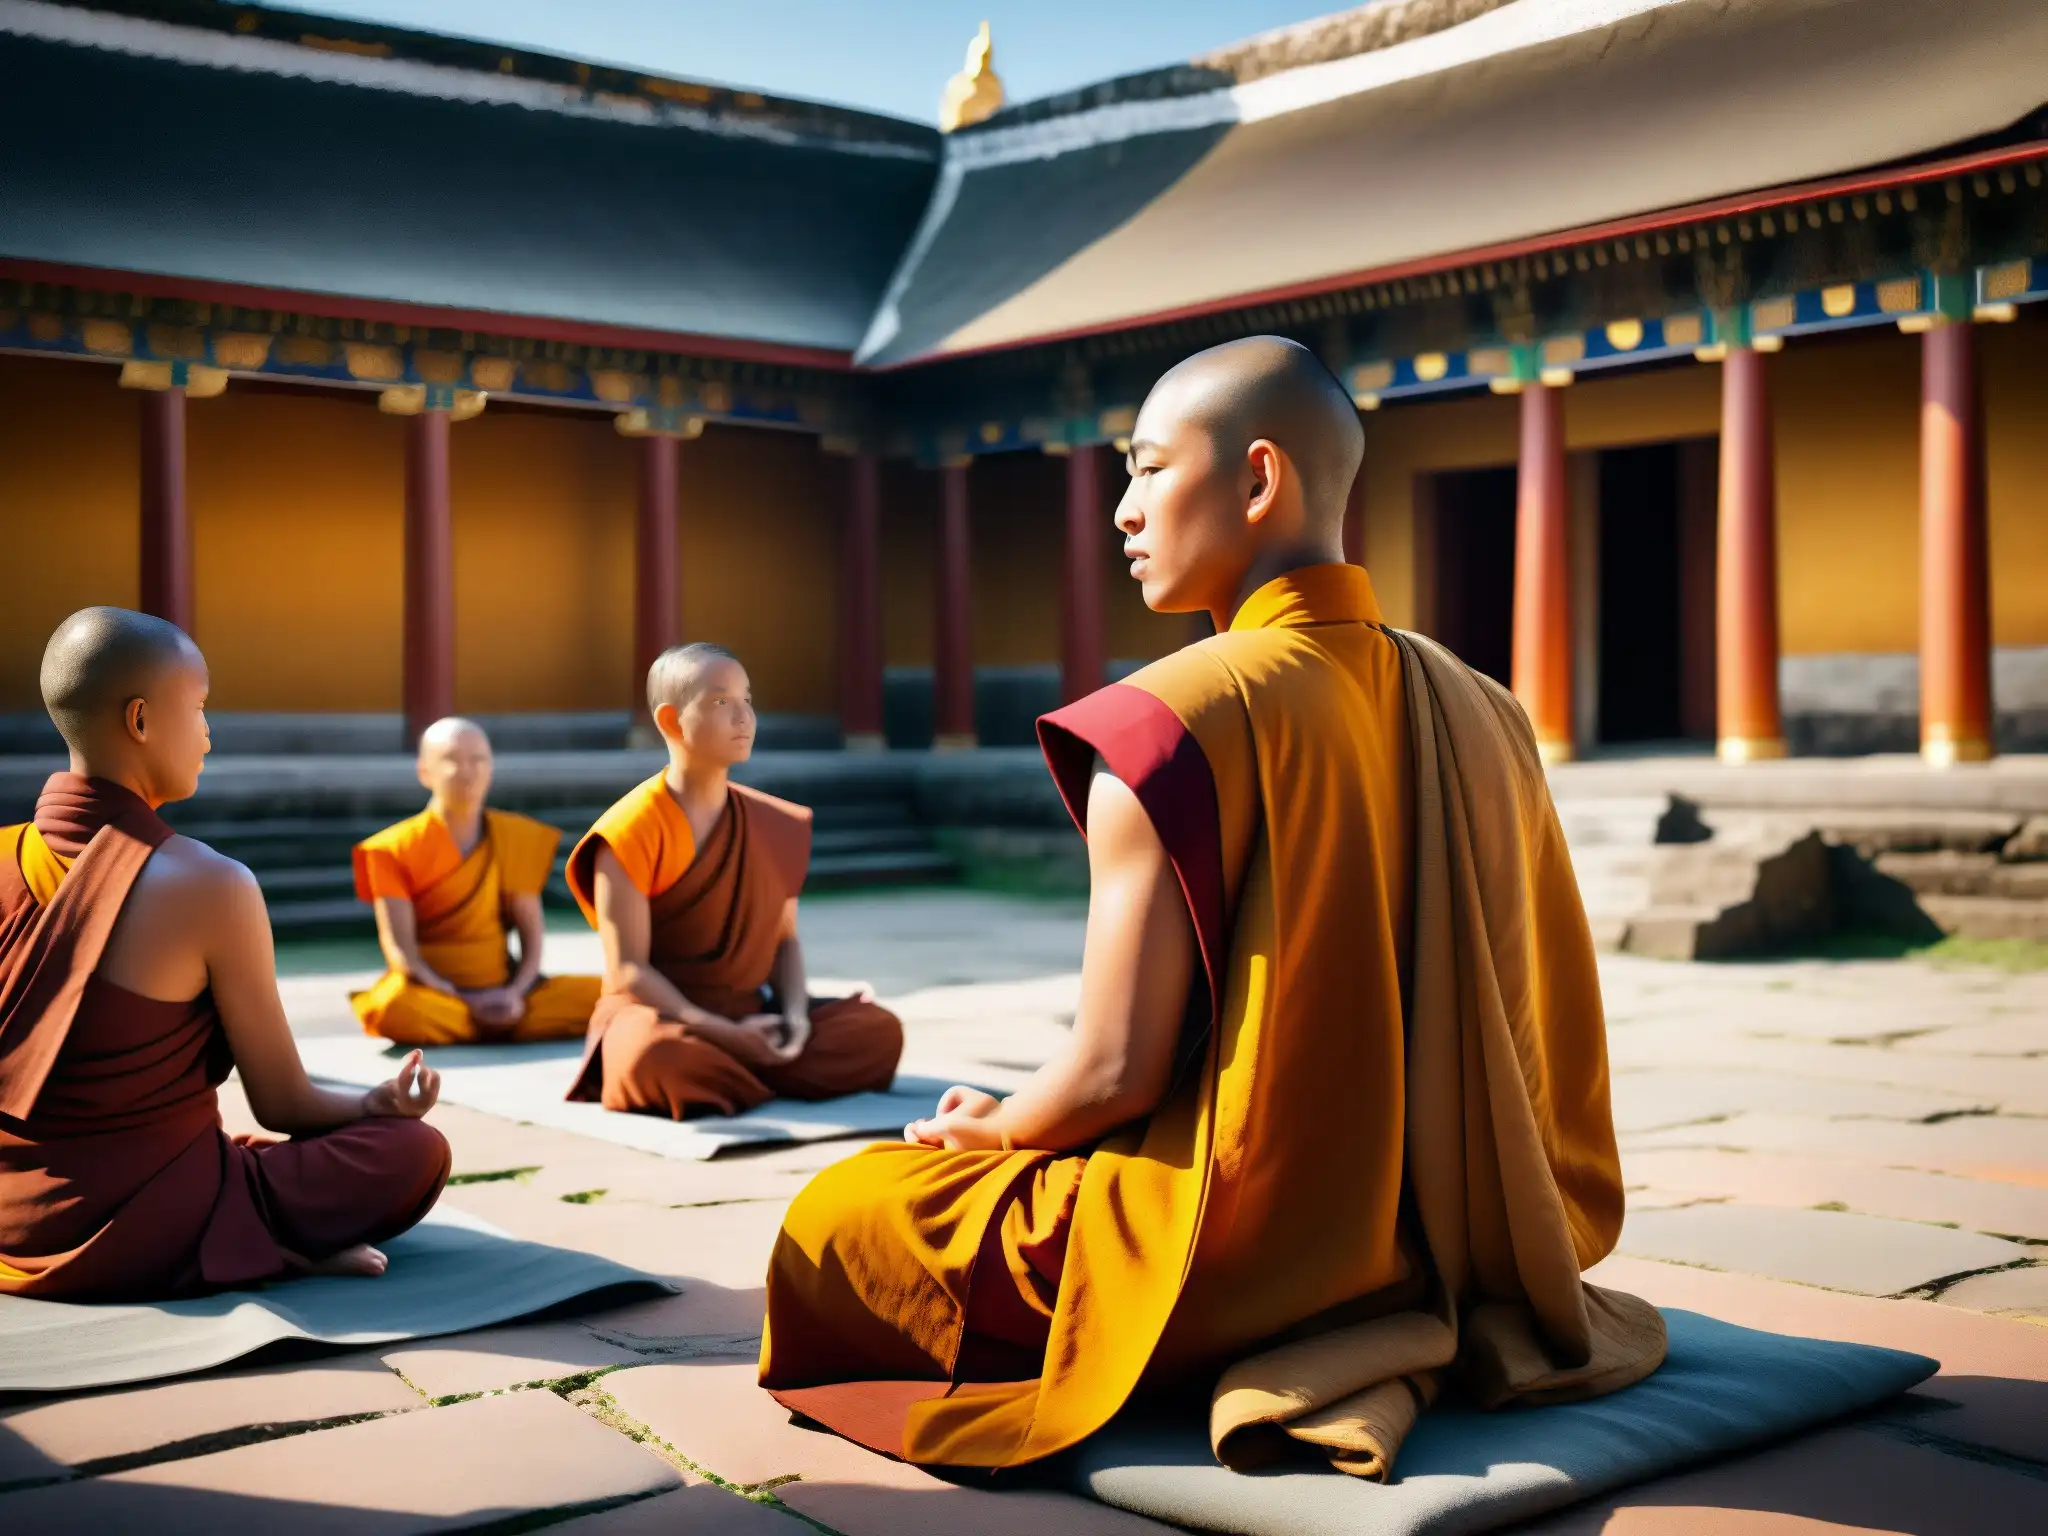 Un grupo de monjes budistas meditando en un antiguo templo, inmersos en la cultura budista